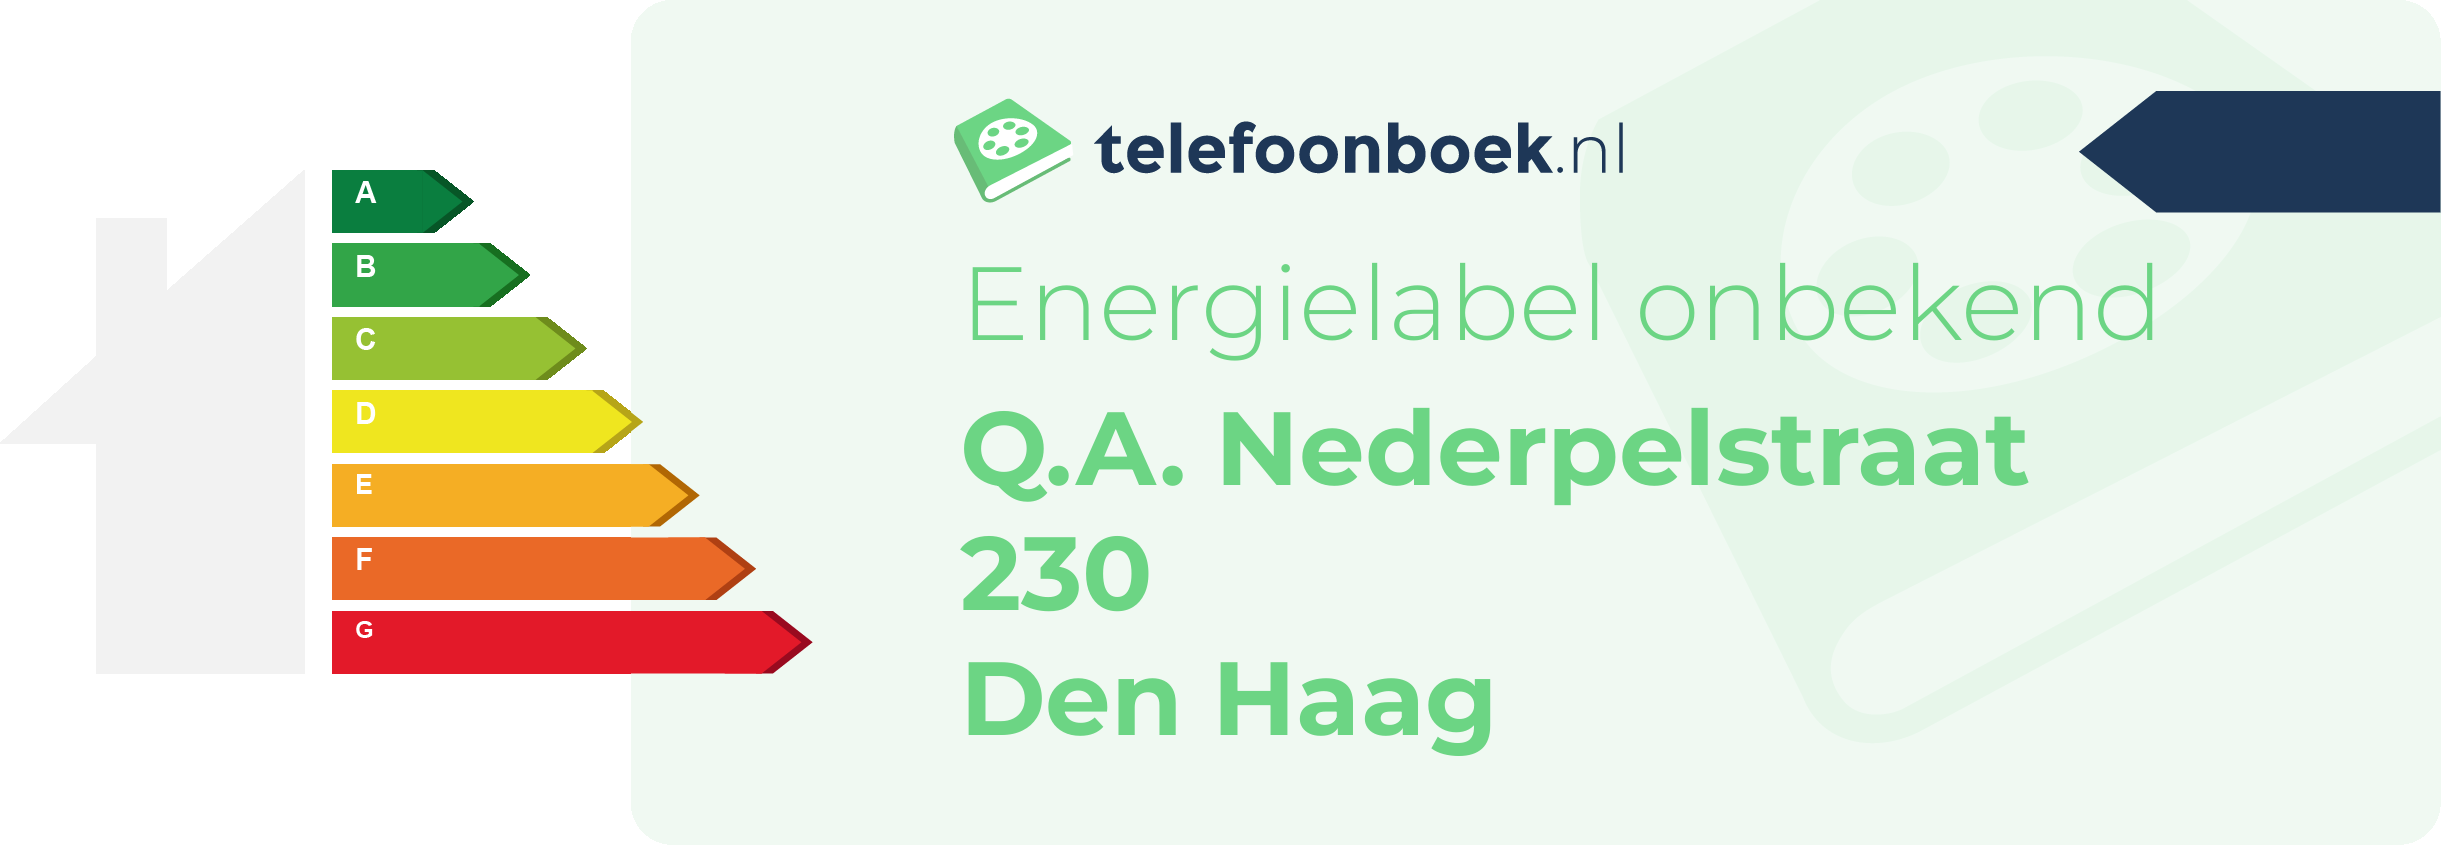 Energielabel Q.A. Nederpelstraat 230 Den Haag